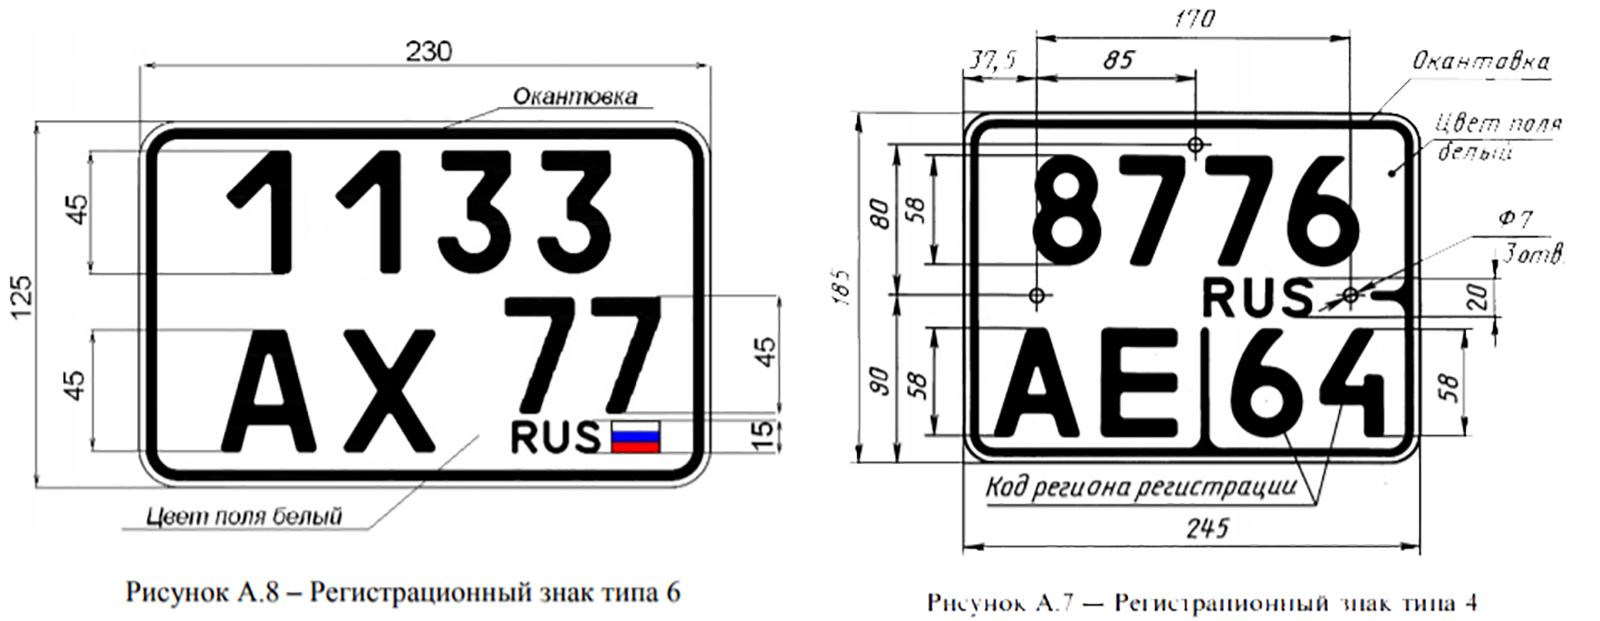 Бесплатный вертикальный номер. Размеры номерного знака мотоцикла. Гос номерной знак автомобиля размер. Габариты номерного знака автомобиля в России. Размер номерного знака на скутер.